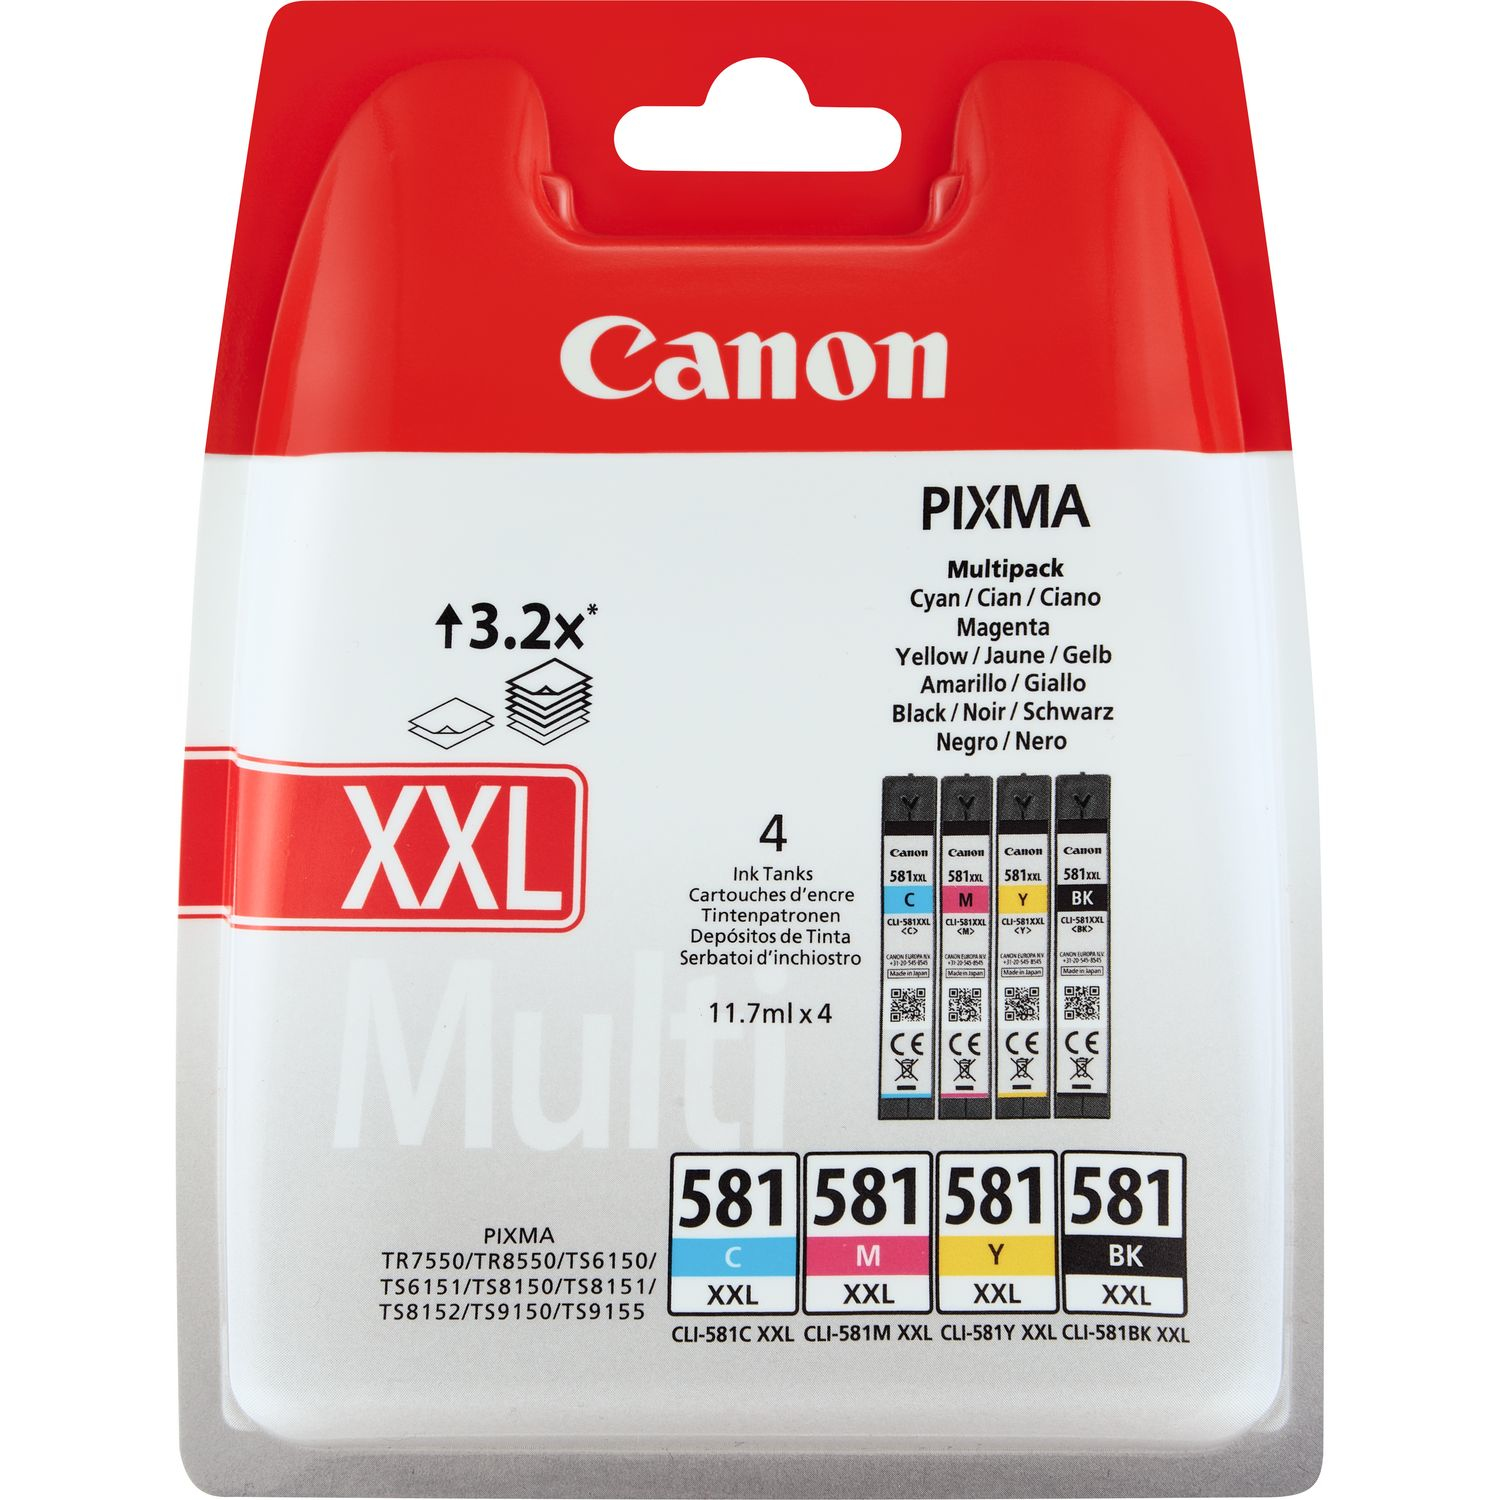 Afbeelding Canon CLI-581XXL C/M/Y/BK Inktcartridge 4-kleuren Voordeelbundel Extra door Wohi.nl